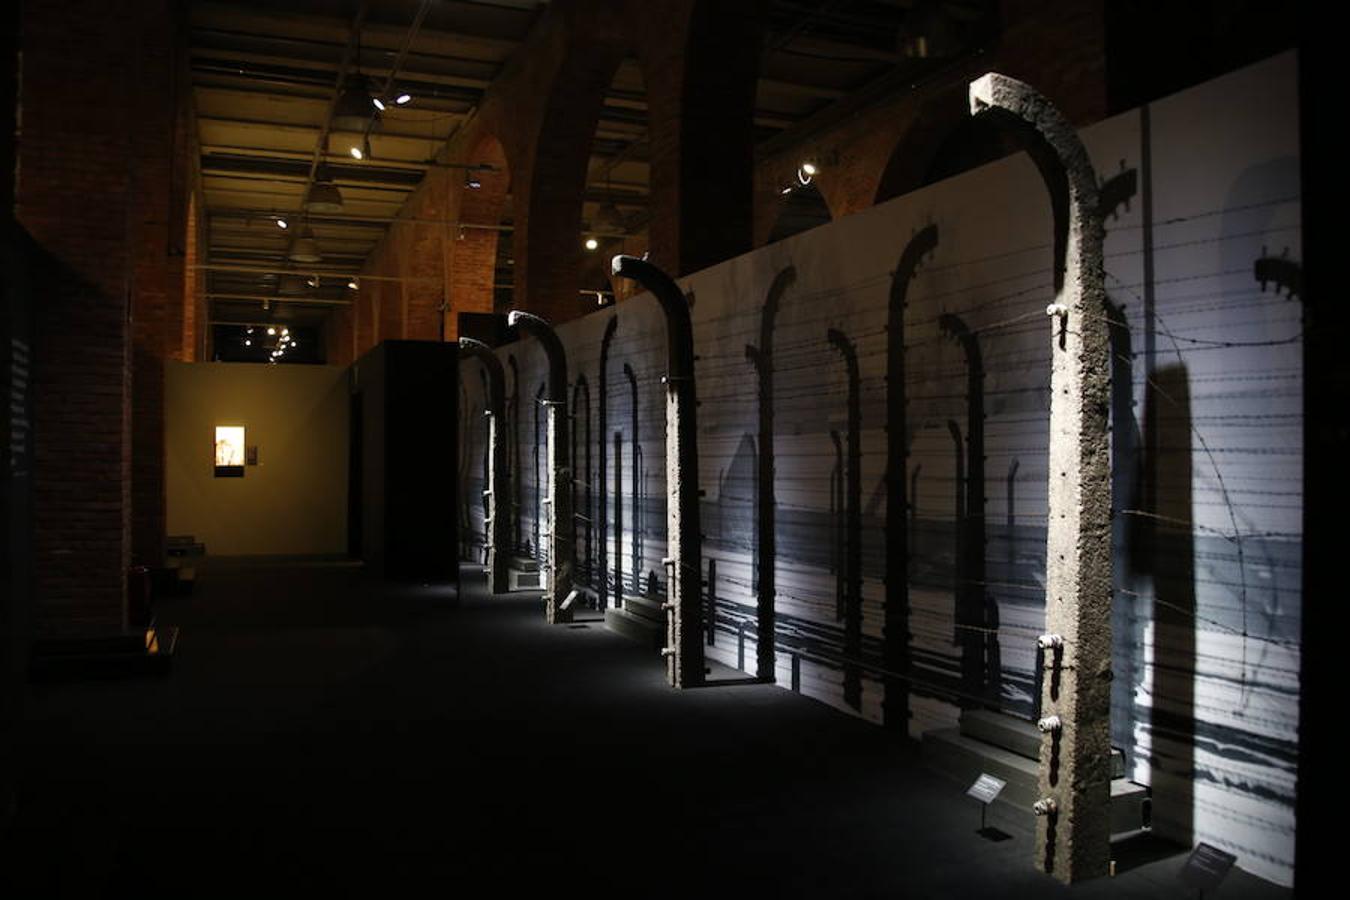 La exposición definitiva sobre el terrible campo de exterminio de Auschwitz, organizada por una empresa vasca, reúne 600 objetos y testimonios de víctimas y verdugos